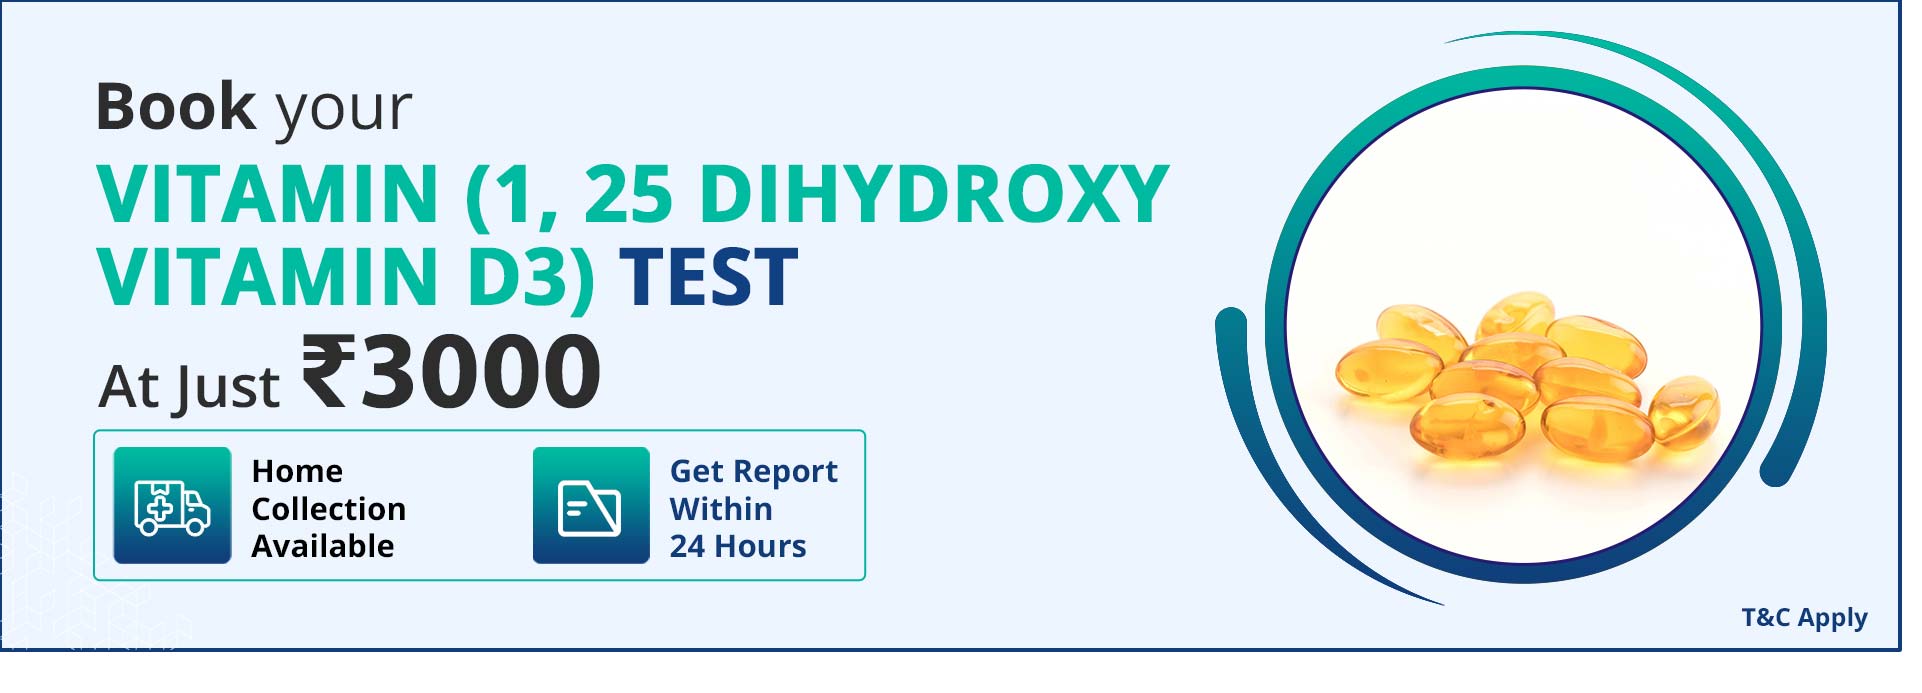 Vitamin (1, 25 Dihydroxy vitamin D3) Test